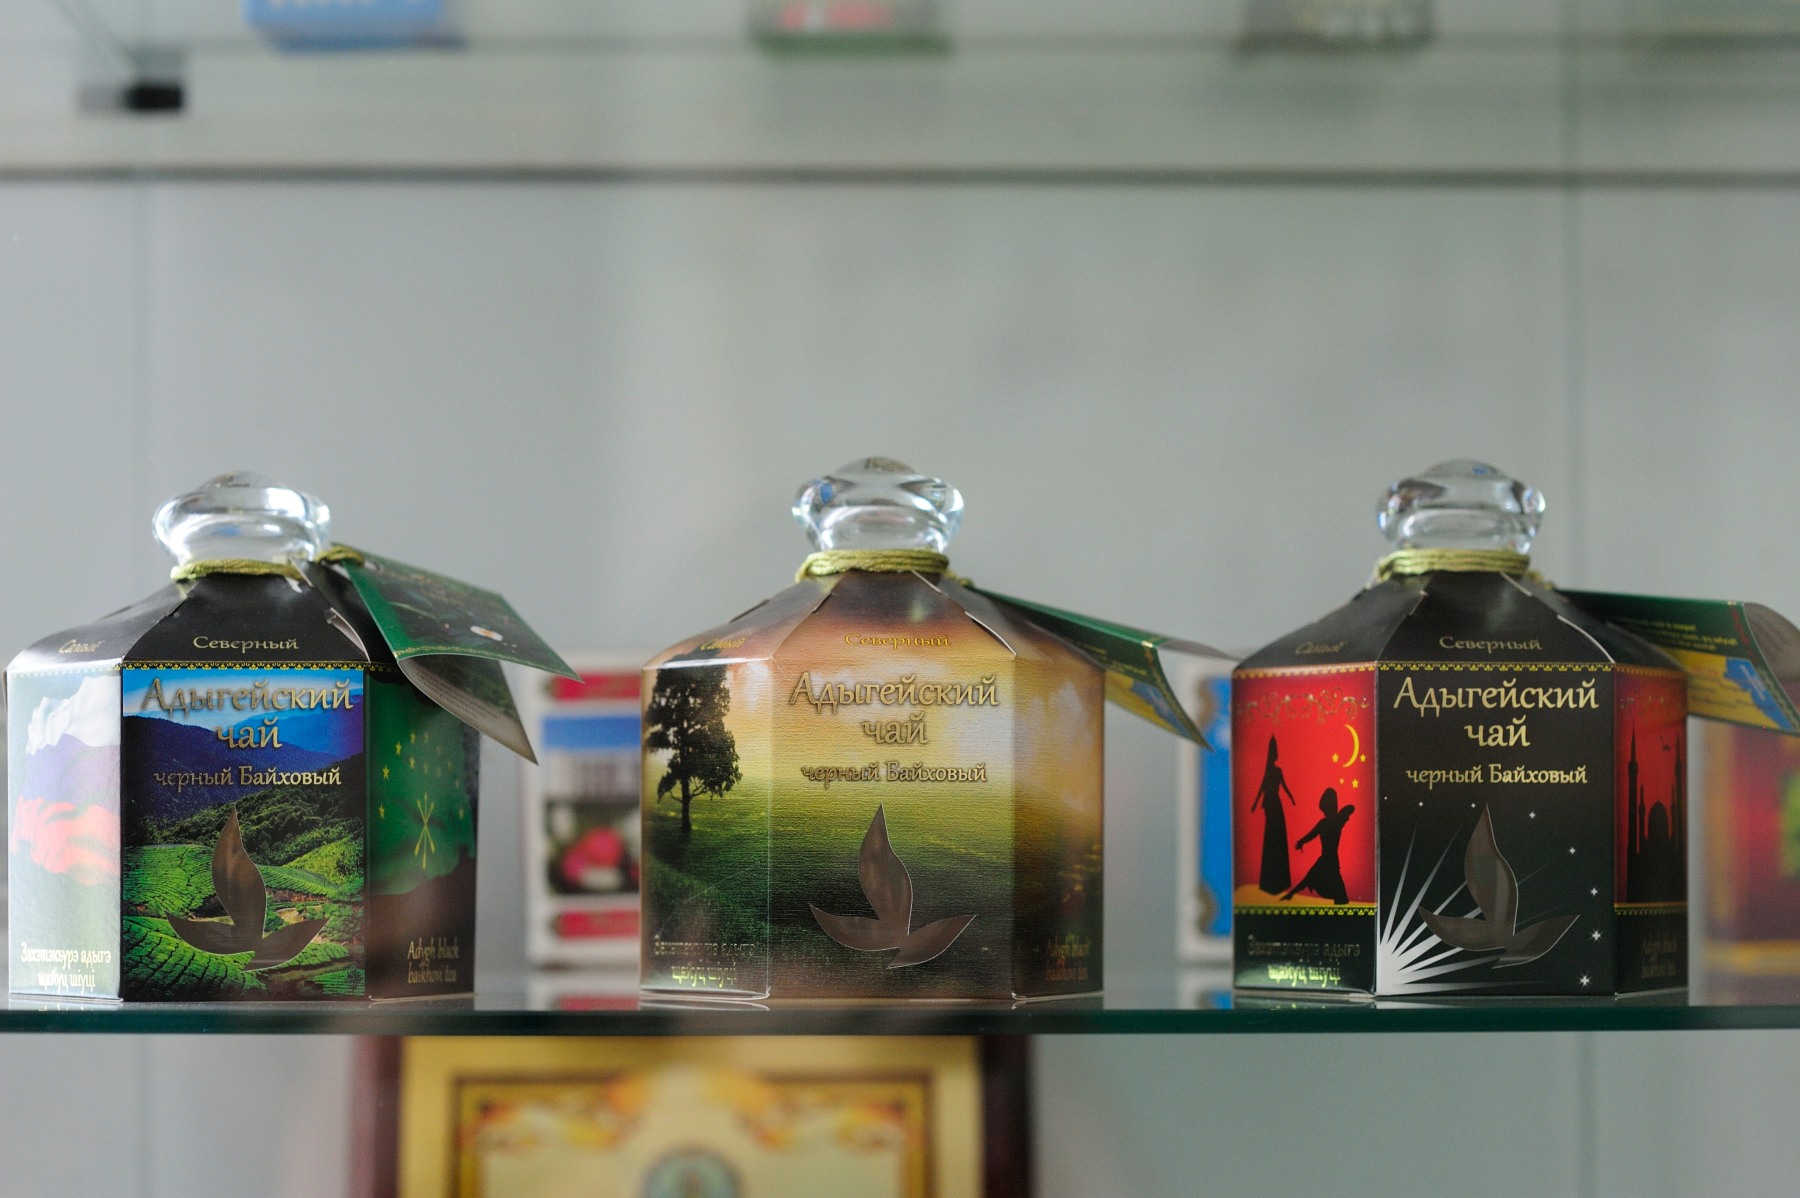 Адыгейский чай завоевал золото на Российской агропромышленной выставке «Золотая осень»